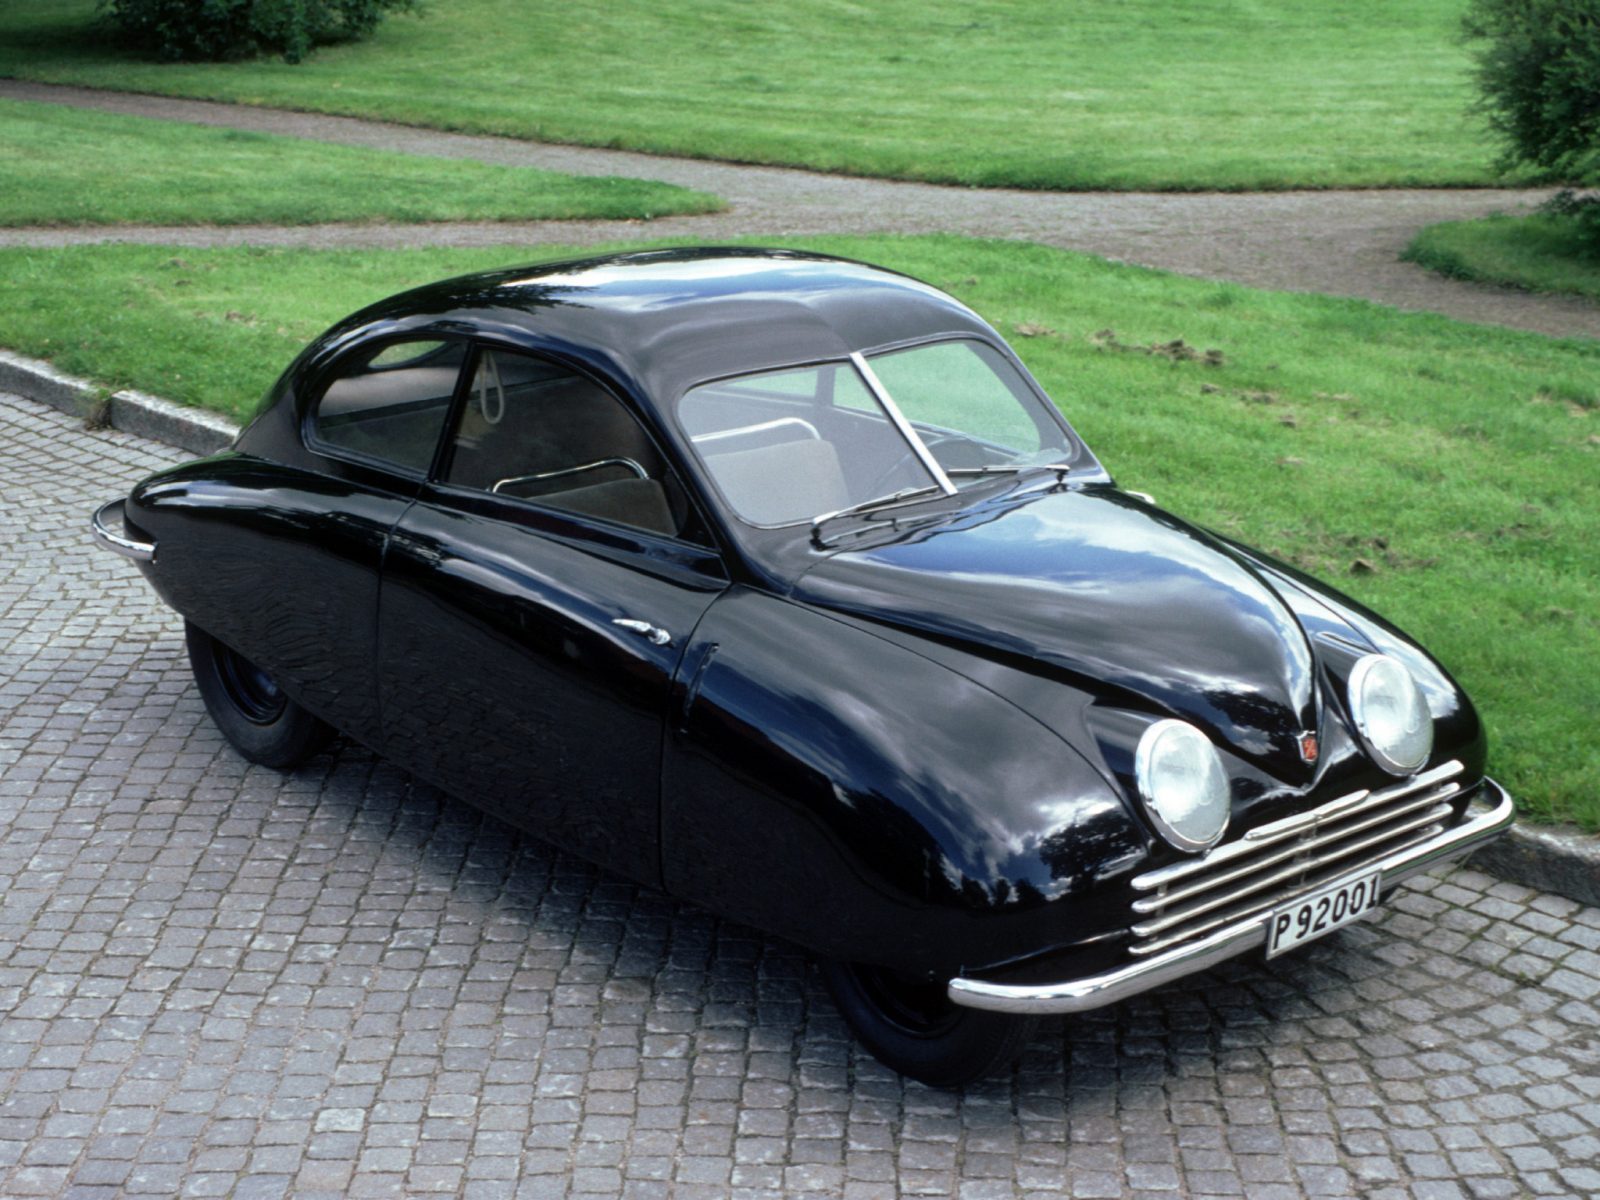 10 juin 1947 – Saab présente sa première voiture